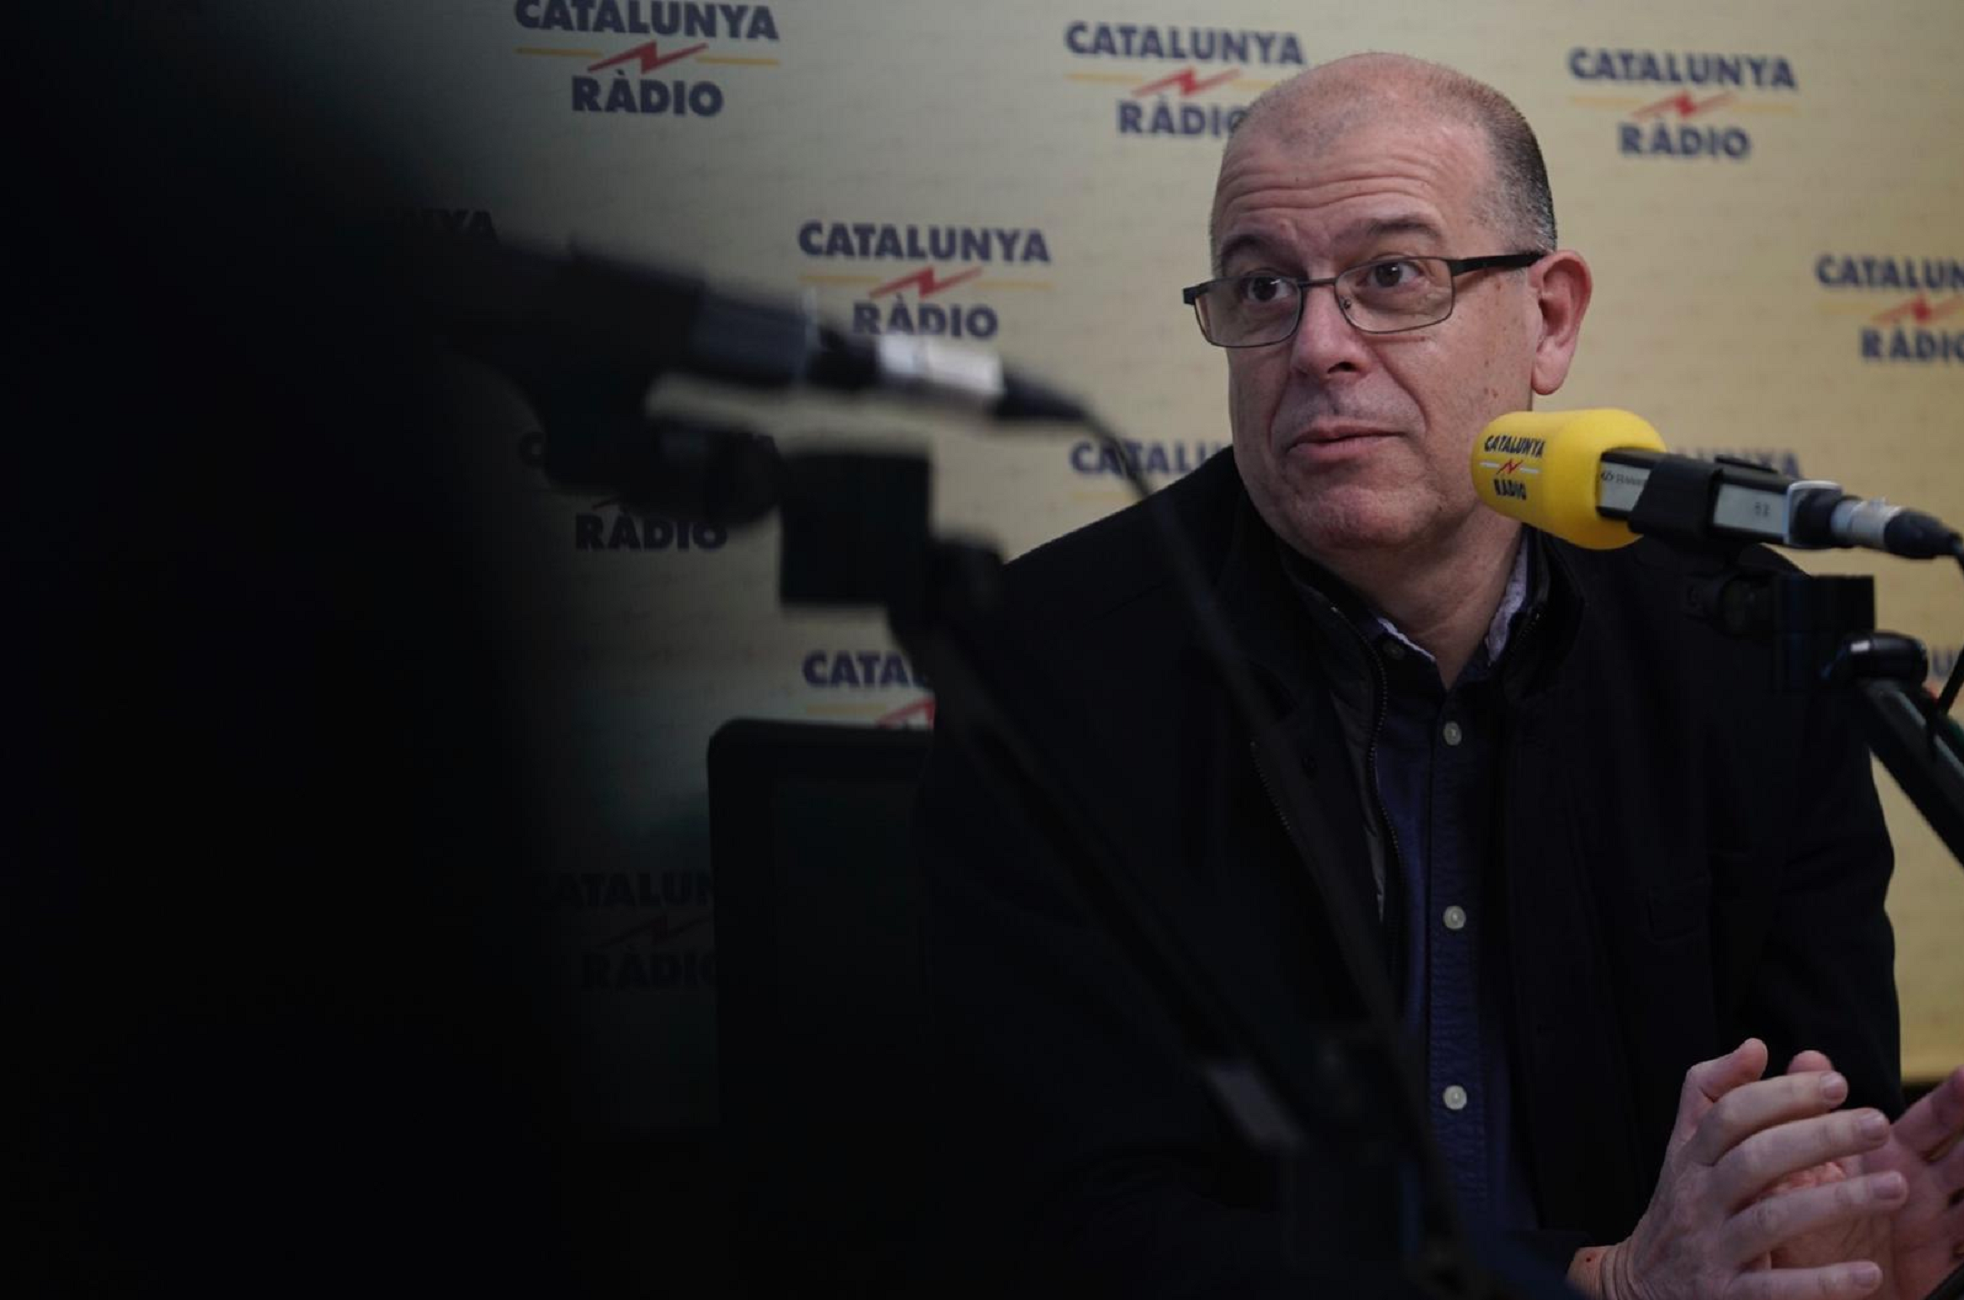 Zaragoza: "Als independentistes, els agraden més les porres de Rajoy que les inversions de Sánchez"